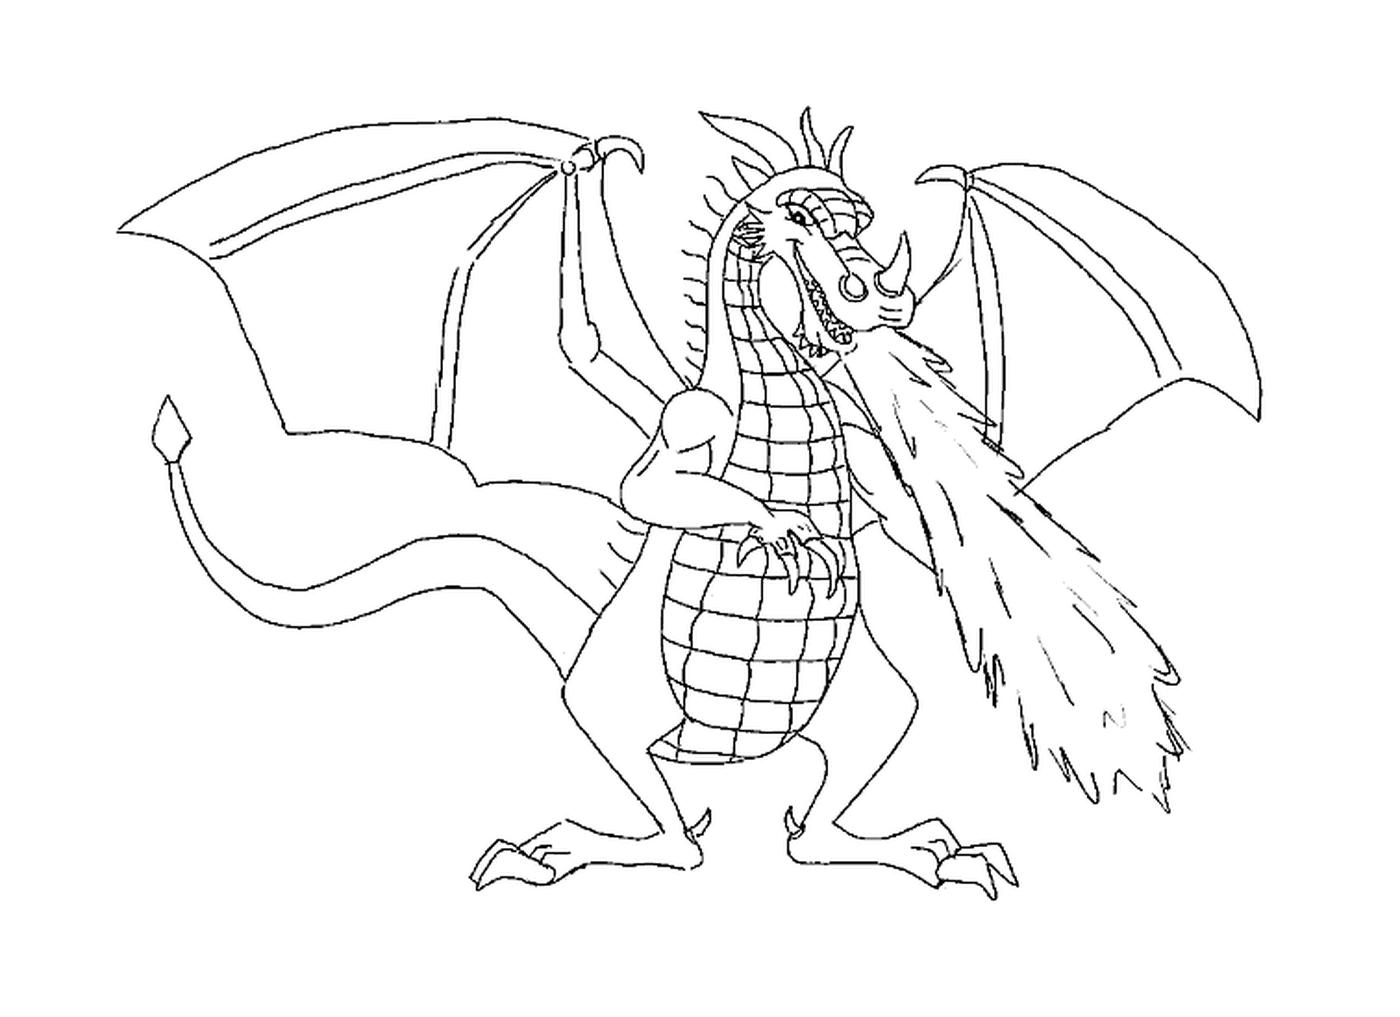   Un dragon majestueux avec ses ailes déployées 